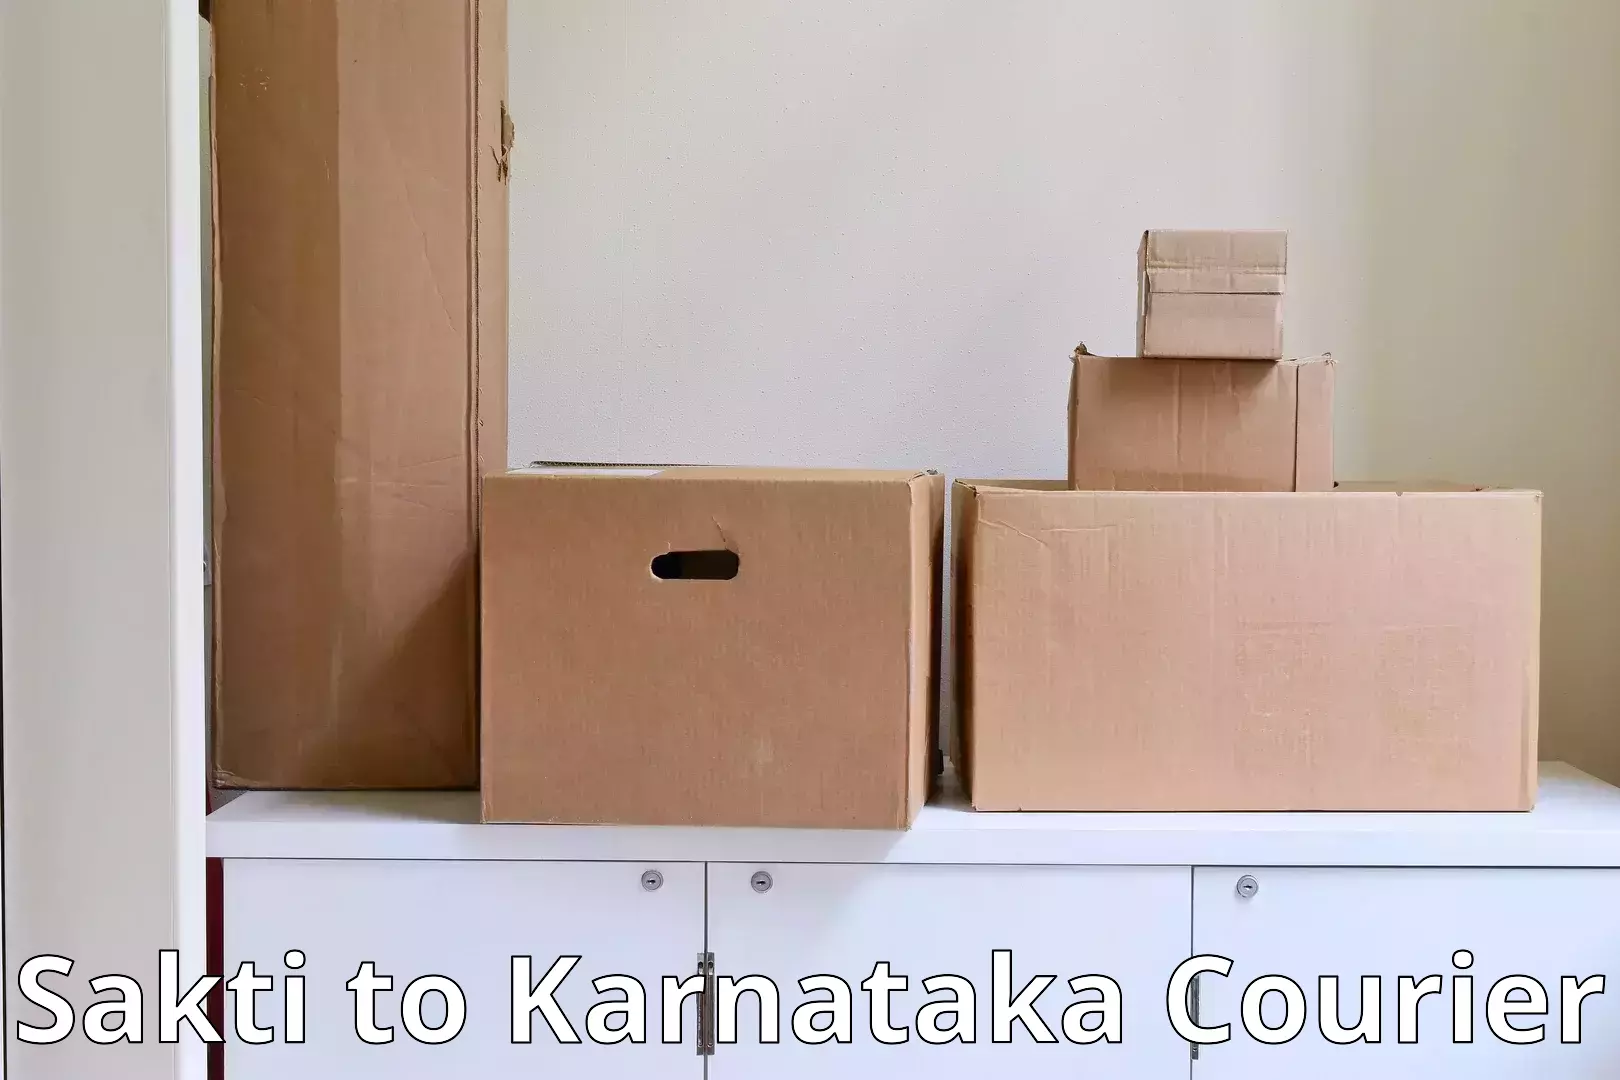 Moving and packing experts Sakti to Hirekerur